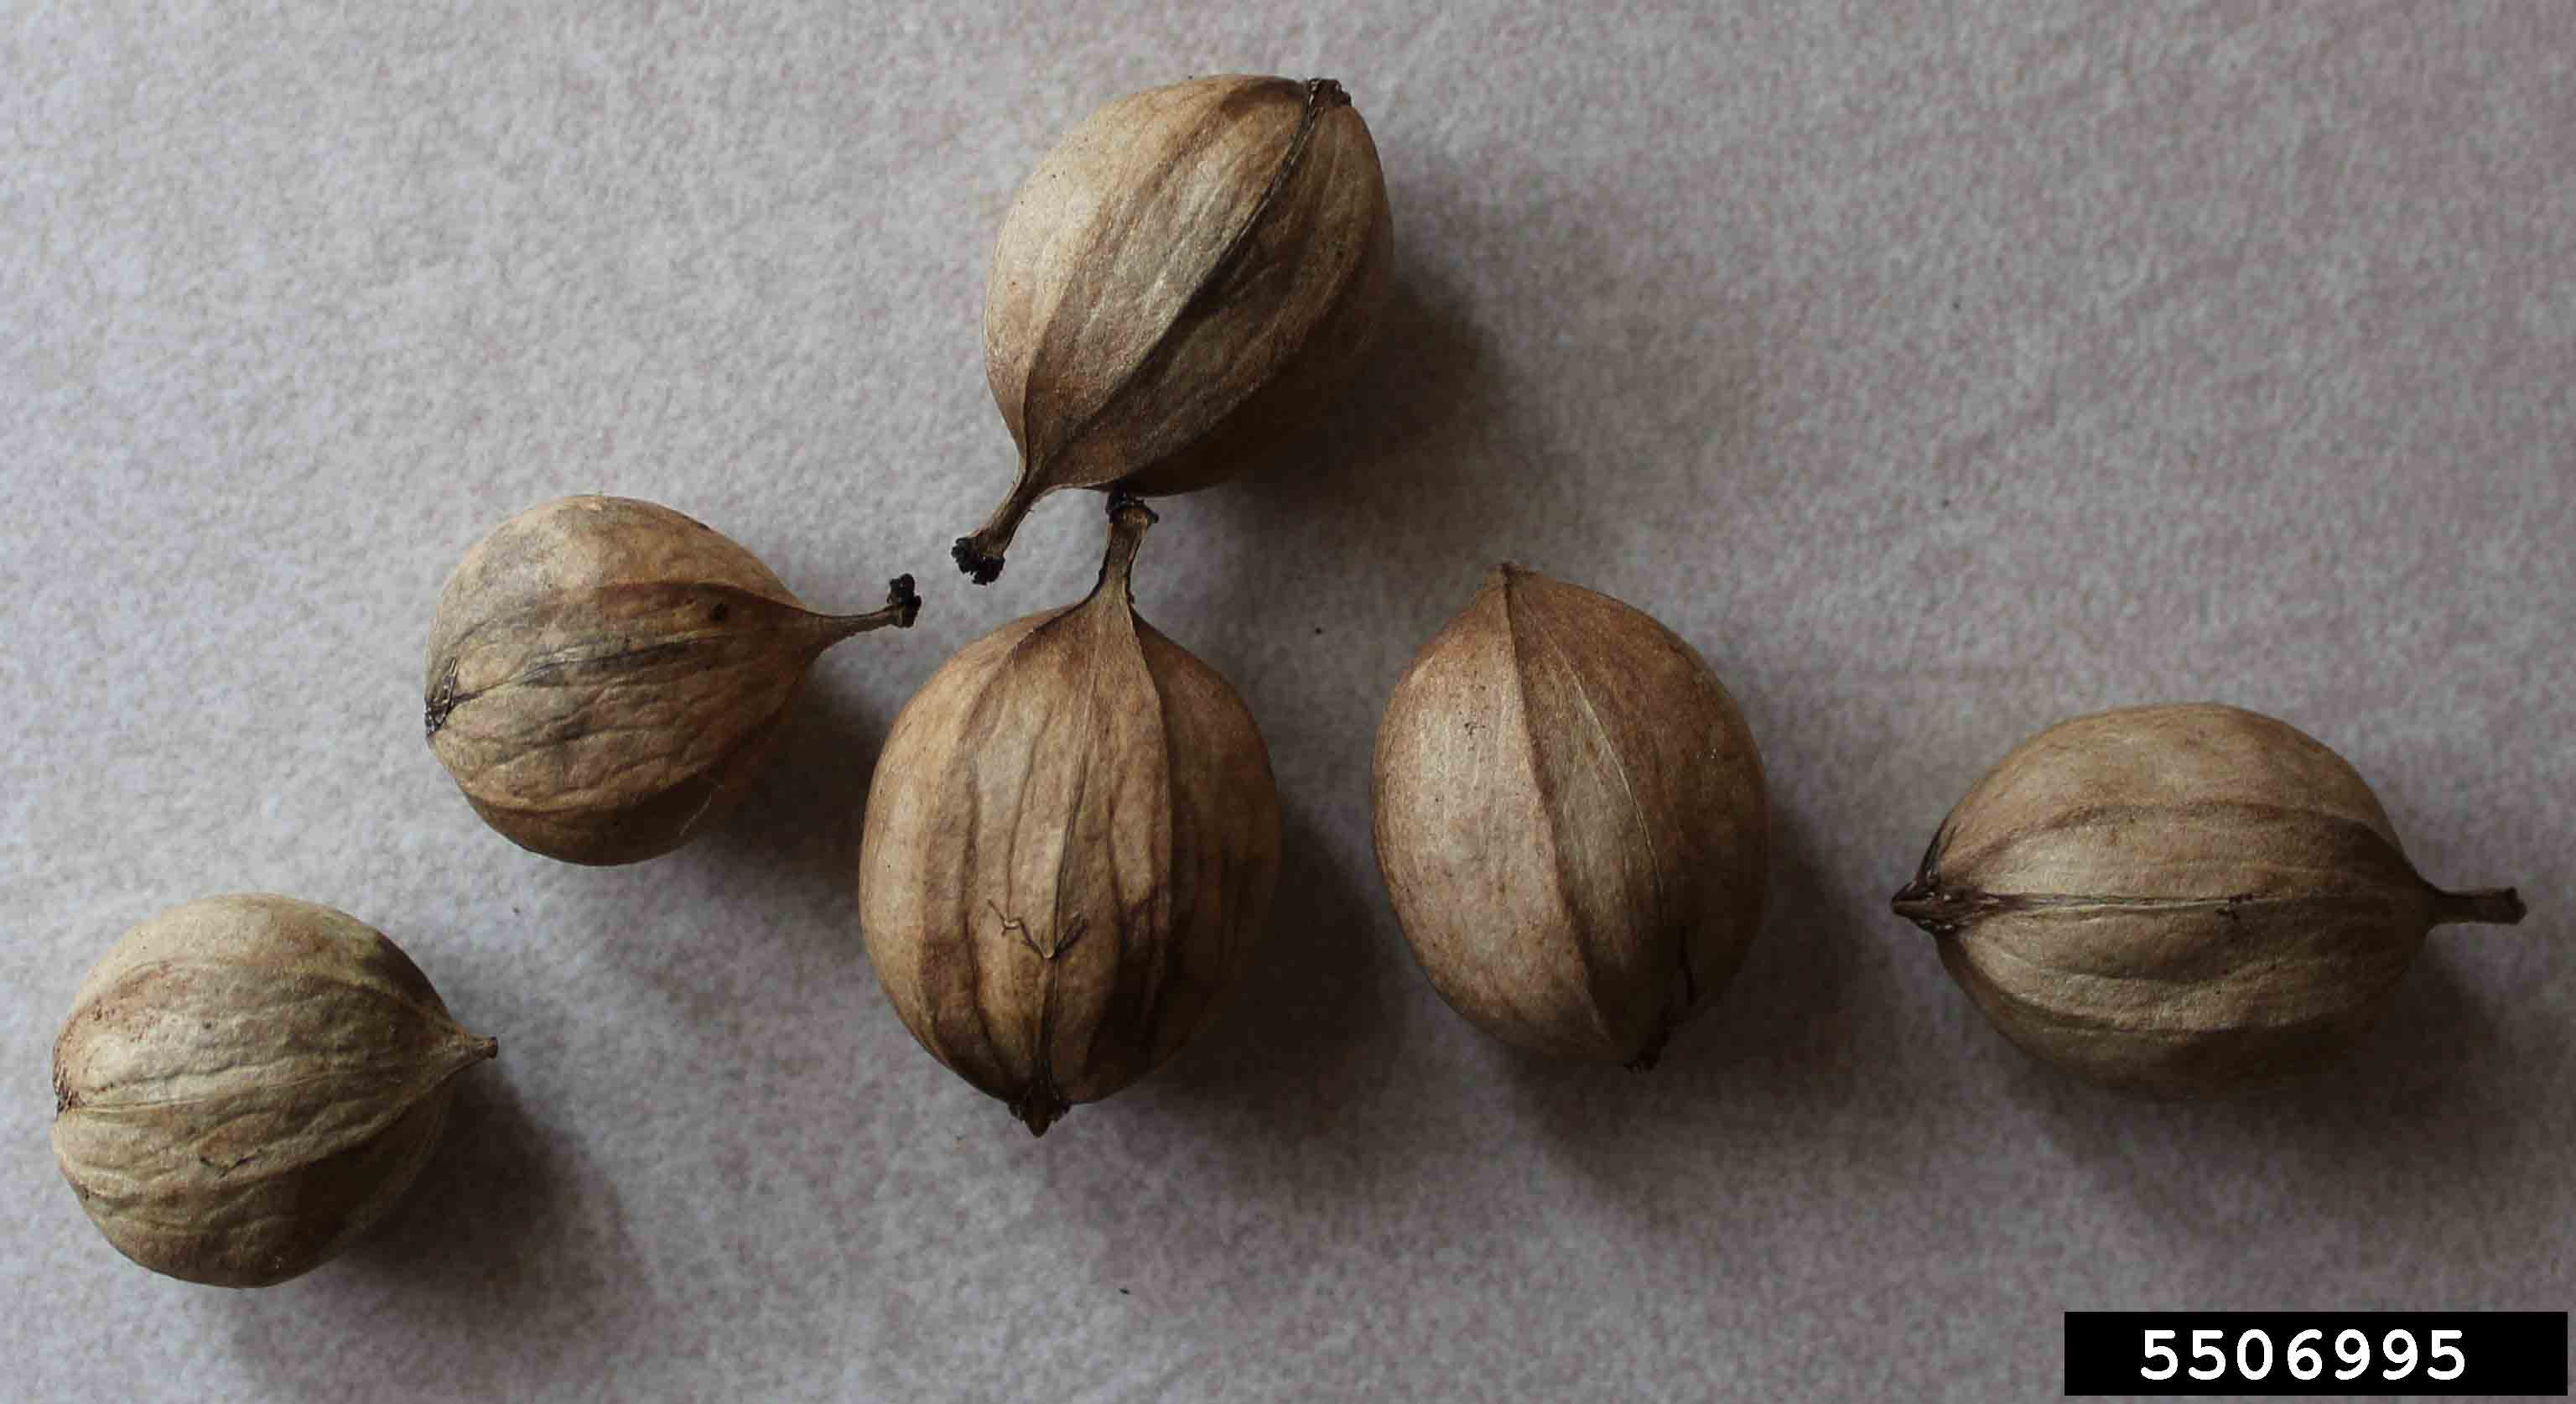 Shagbark hickory nuts